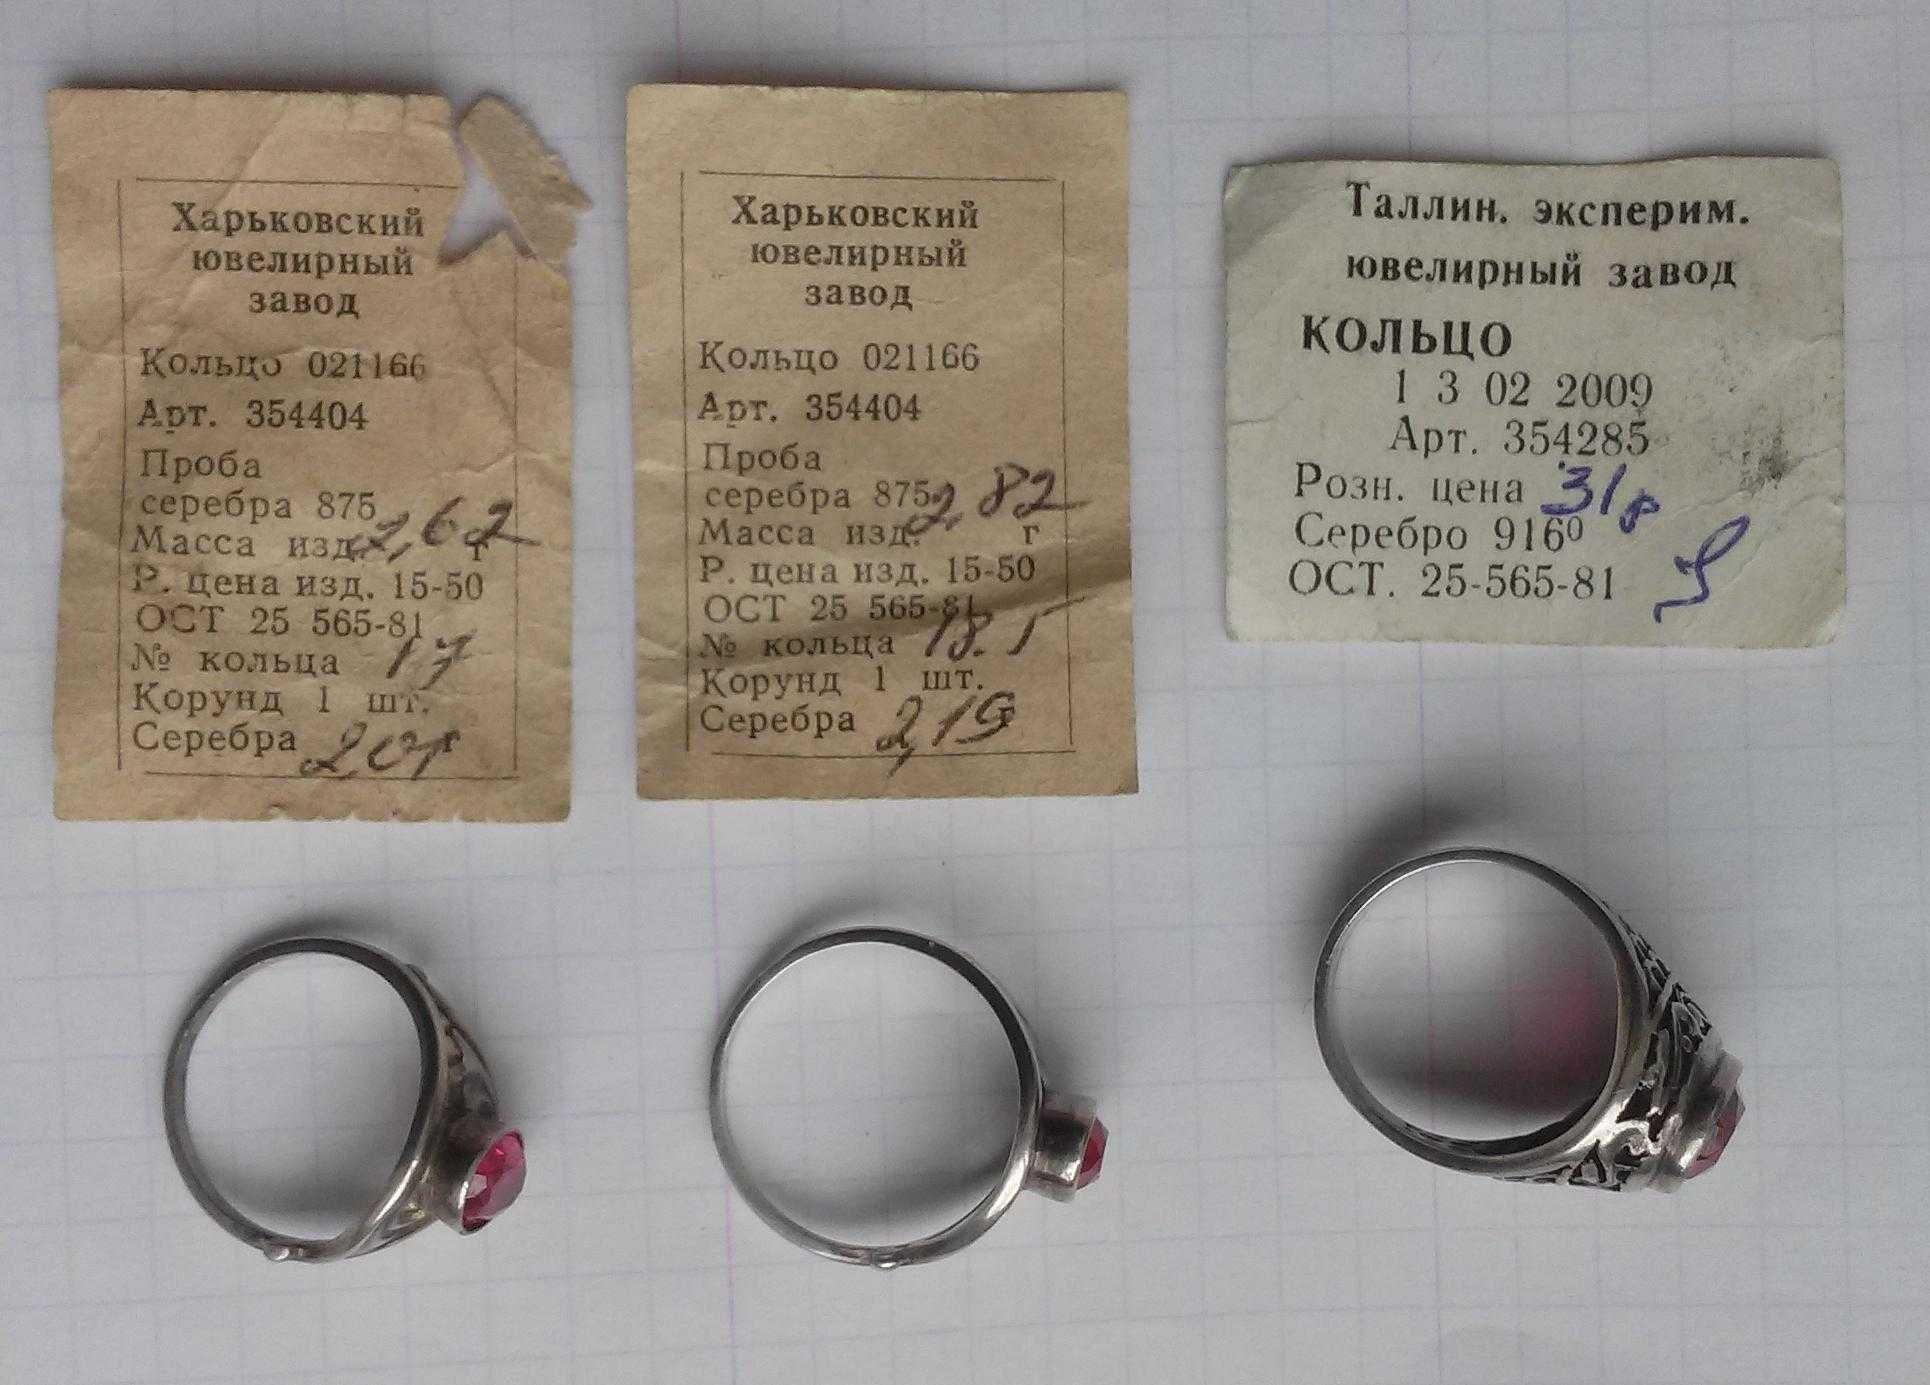 Кільце срібне [кольцо серебряное), срібло СРСР